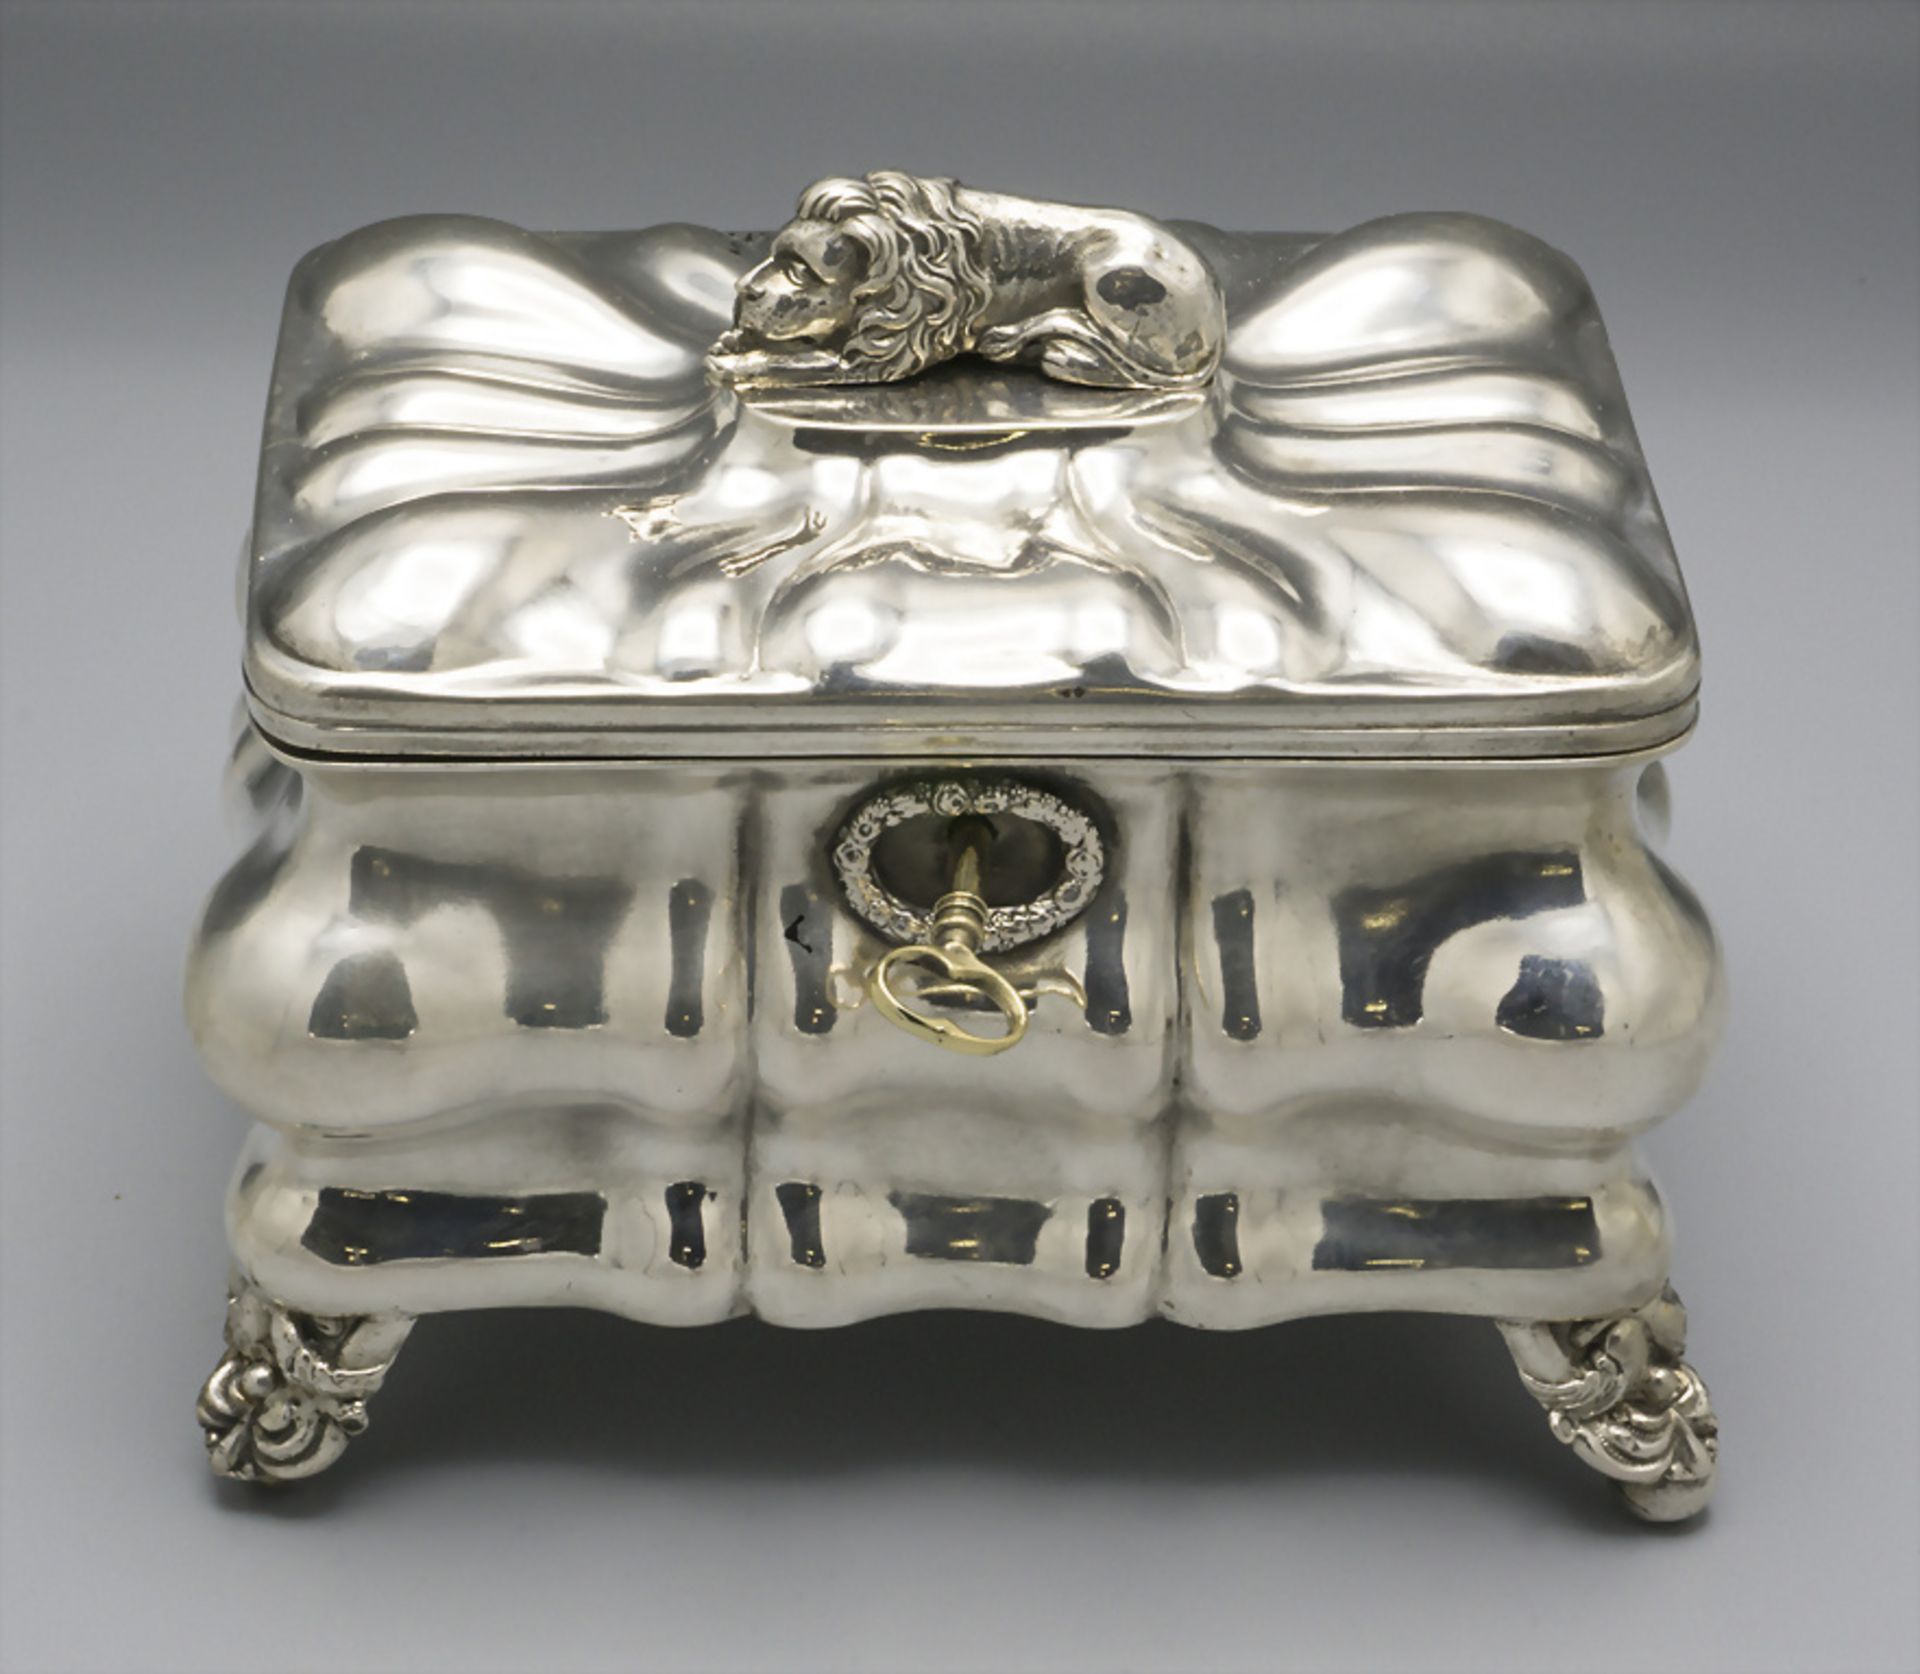 Biedermeier Zuckerdose / A silver Biedermeier sugar bowl, Peter Schima, Wien, um 1847